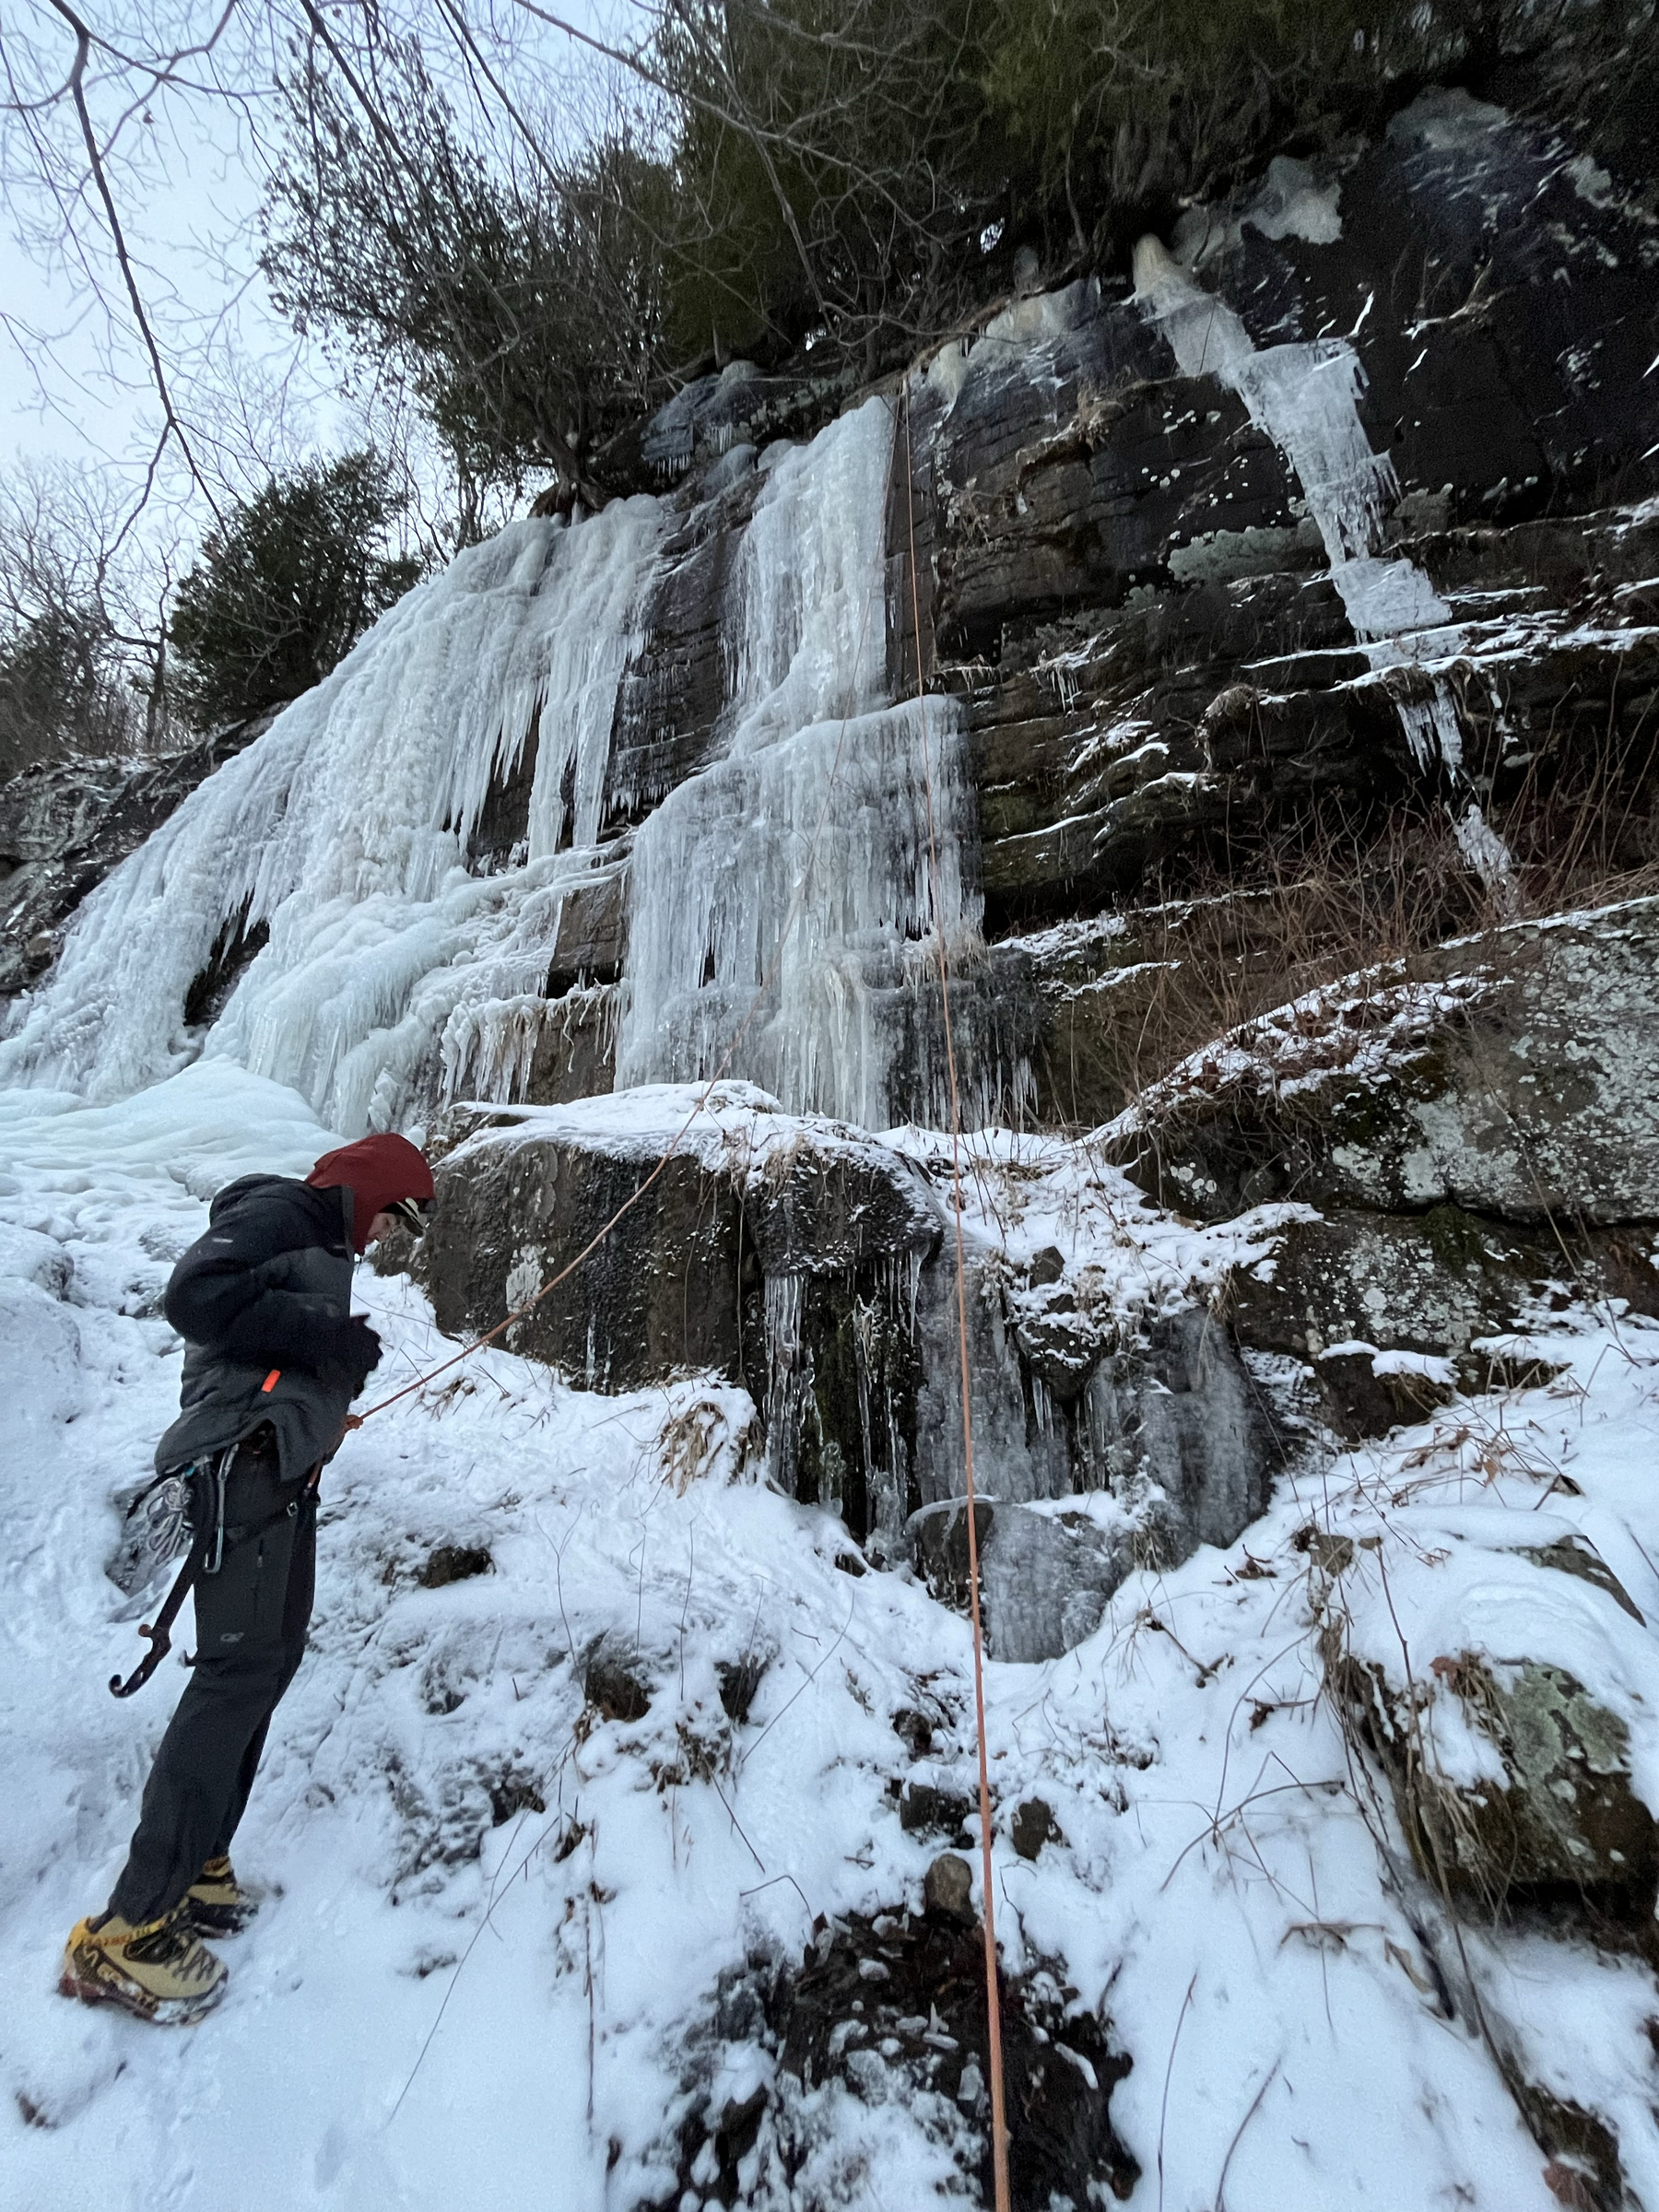 Man standing below a frozen waterfall, dressed in ice climbing gear.